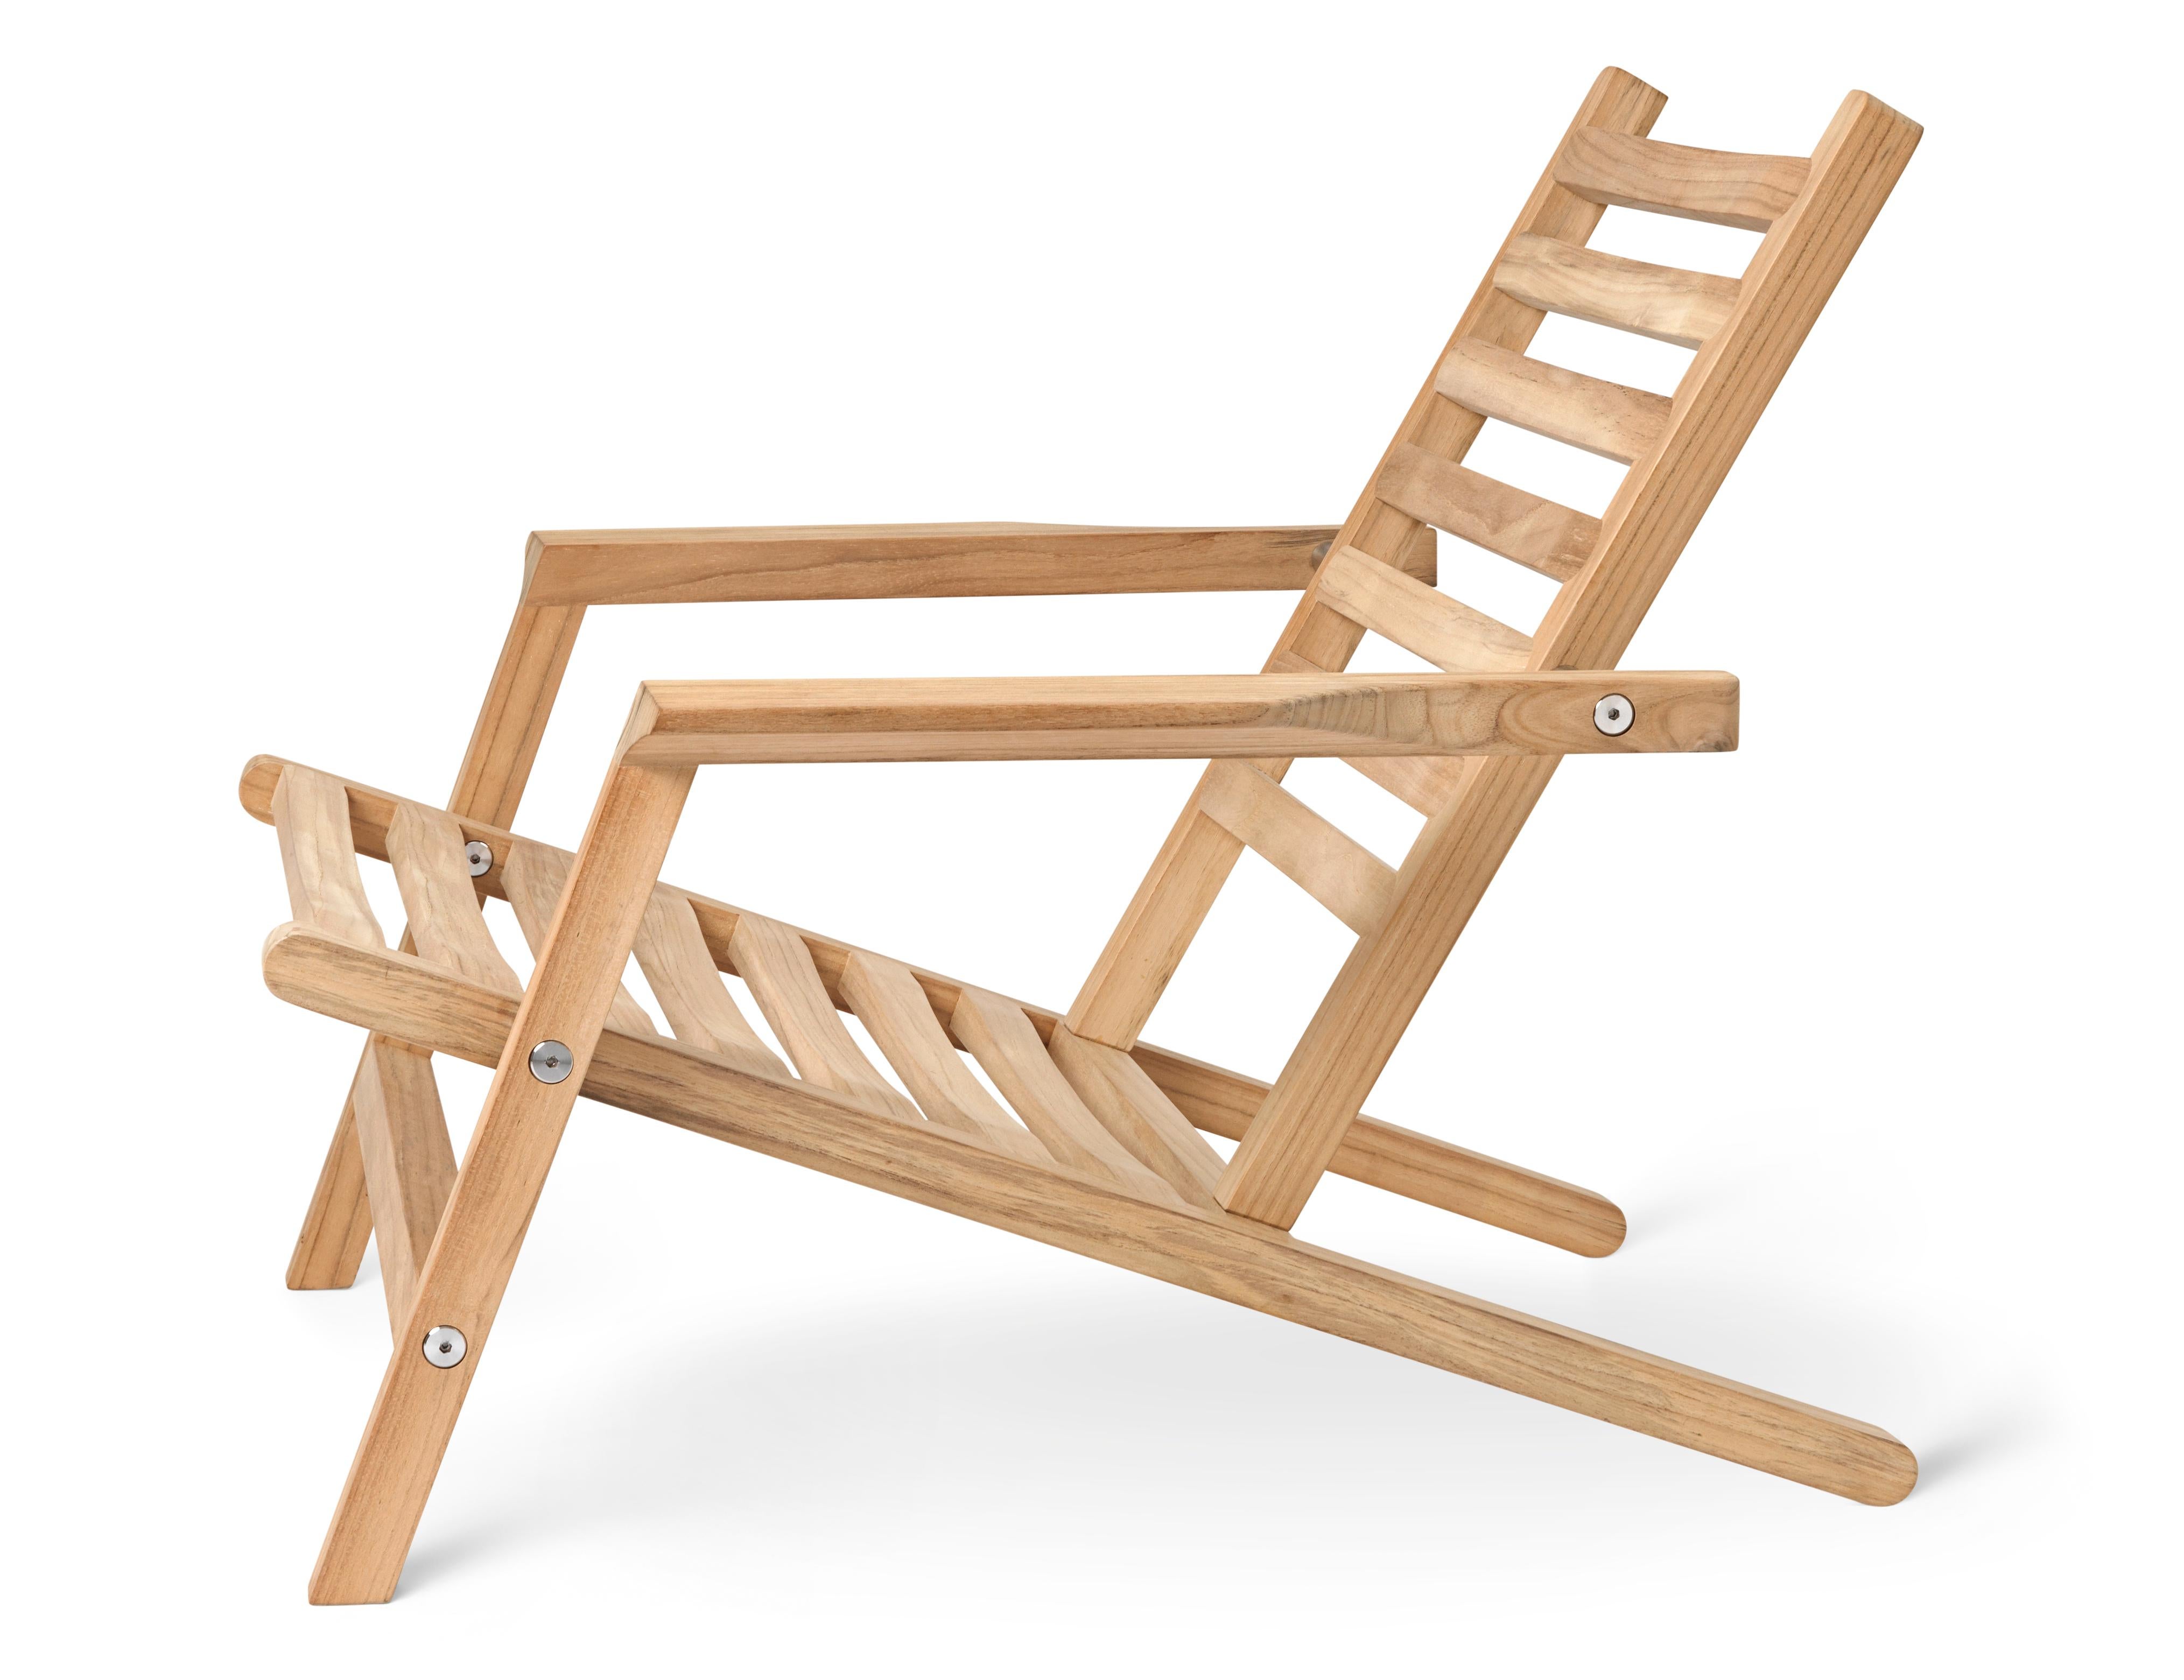 La confortable chaise Outdoor Deck fait partie de la série AH Outdoor, conçue par Alfred Homann en 2022. Comme les autres meubles d'extérieur de la série, la chaise longue se caractérise par des lignes strictes élégamment combinées à des détails